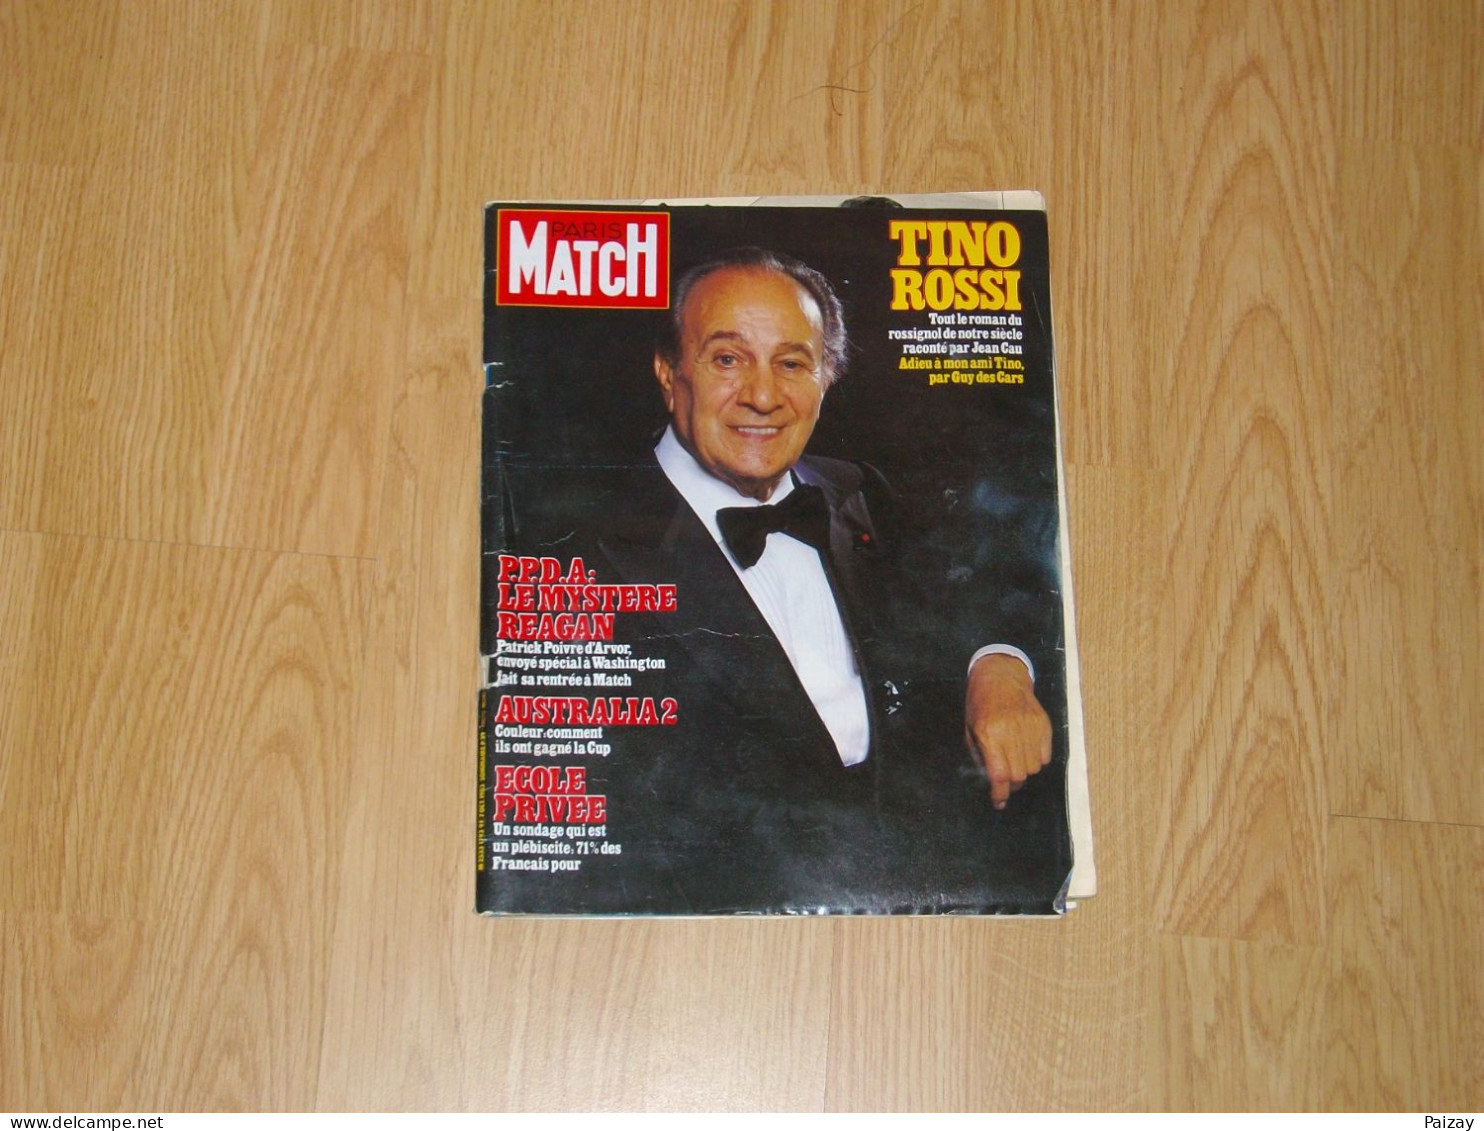 PARIS-MATCH Tino ROSSI - 7 Octobre 1983. 170 Pages PPDA Le Mystère Reagan USA Ecole Privée Austalia 2 - Musique